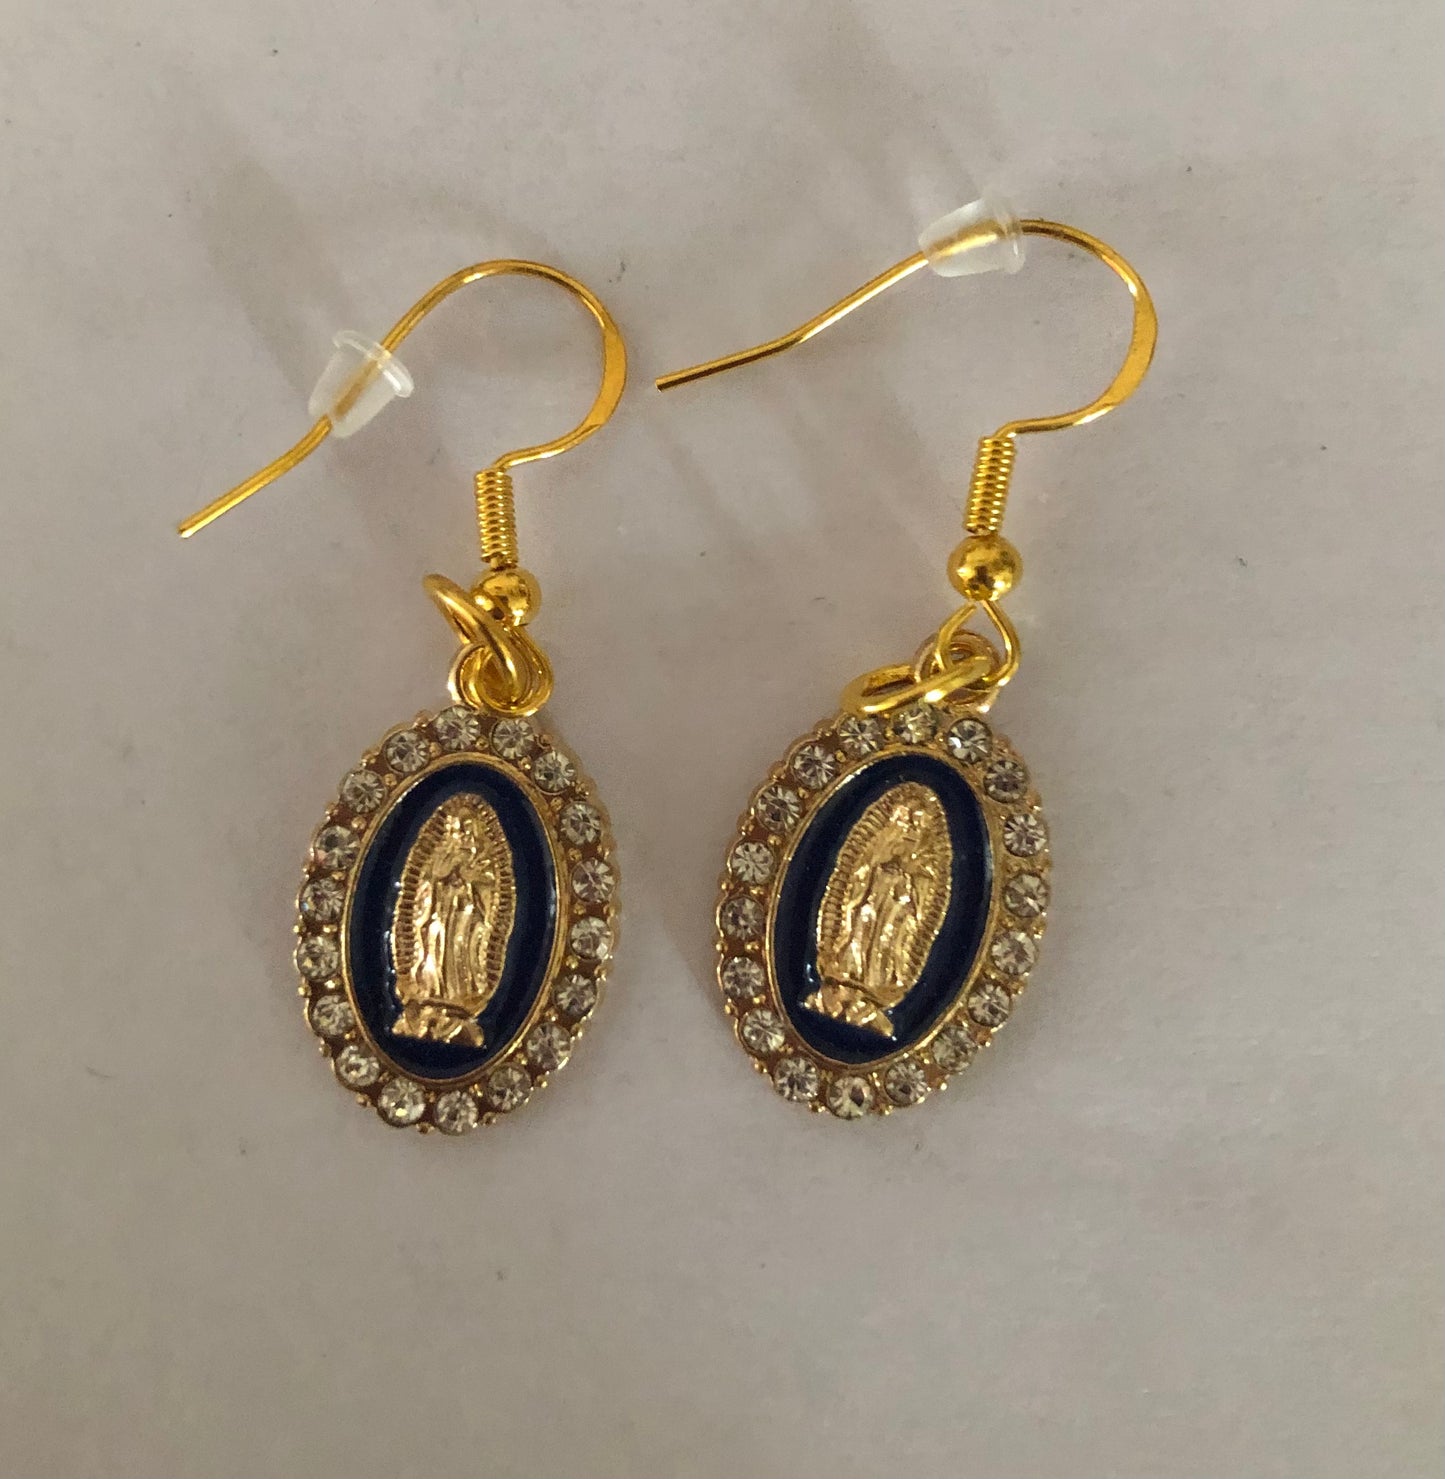 Virgencita earrings